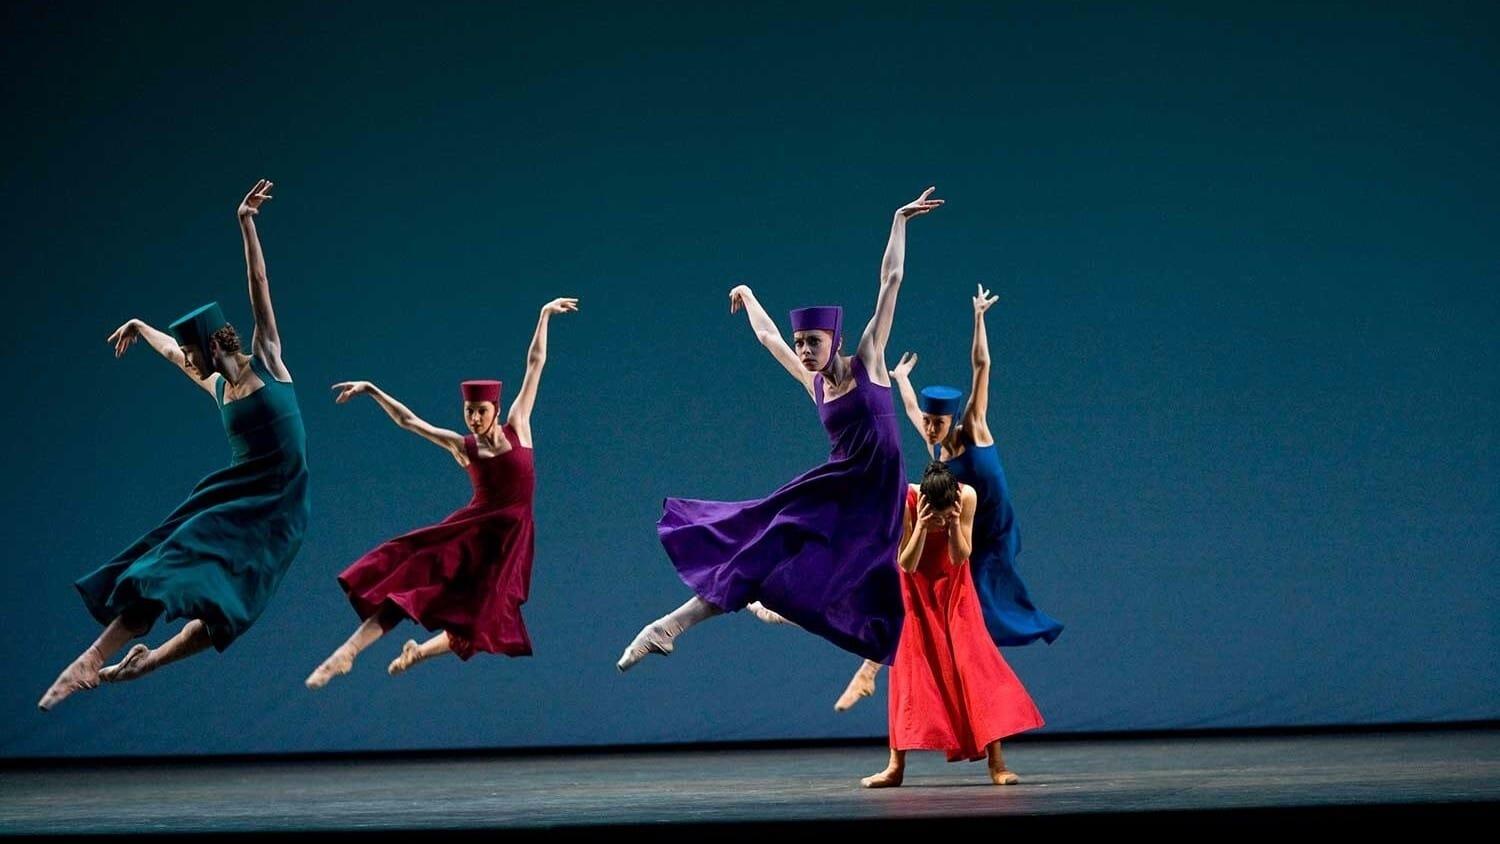 The Bolshoi Ballet: A Contemporary Evening backdrop